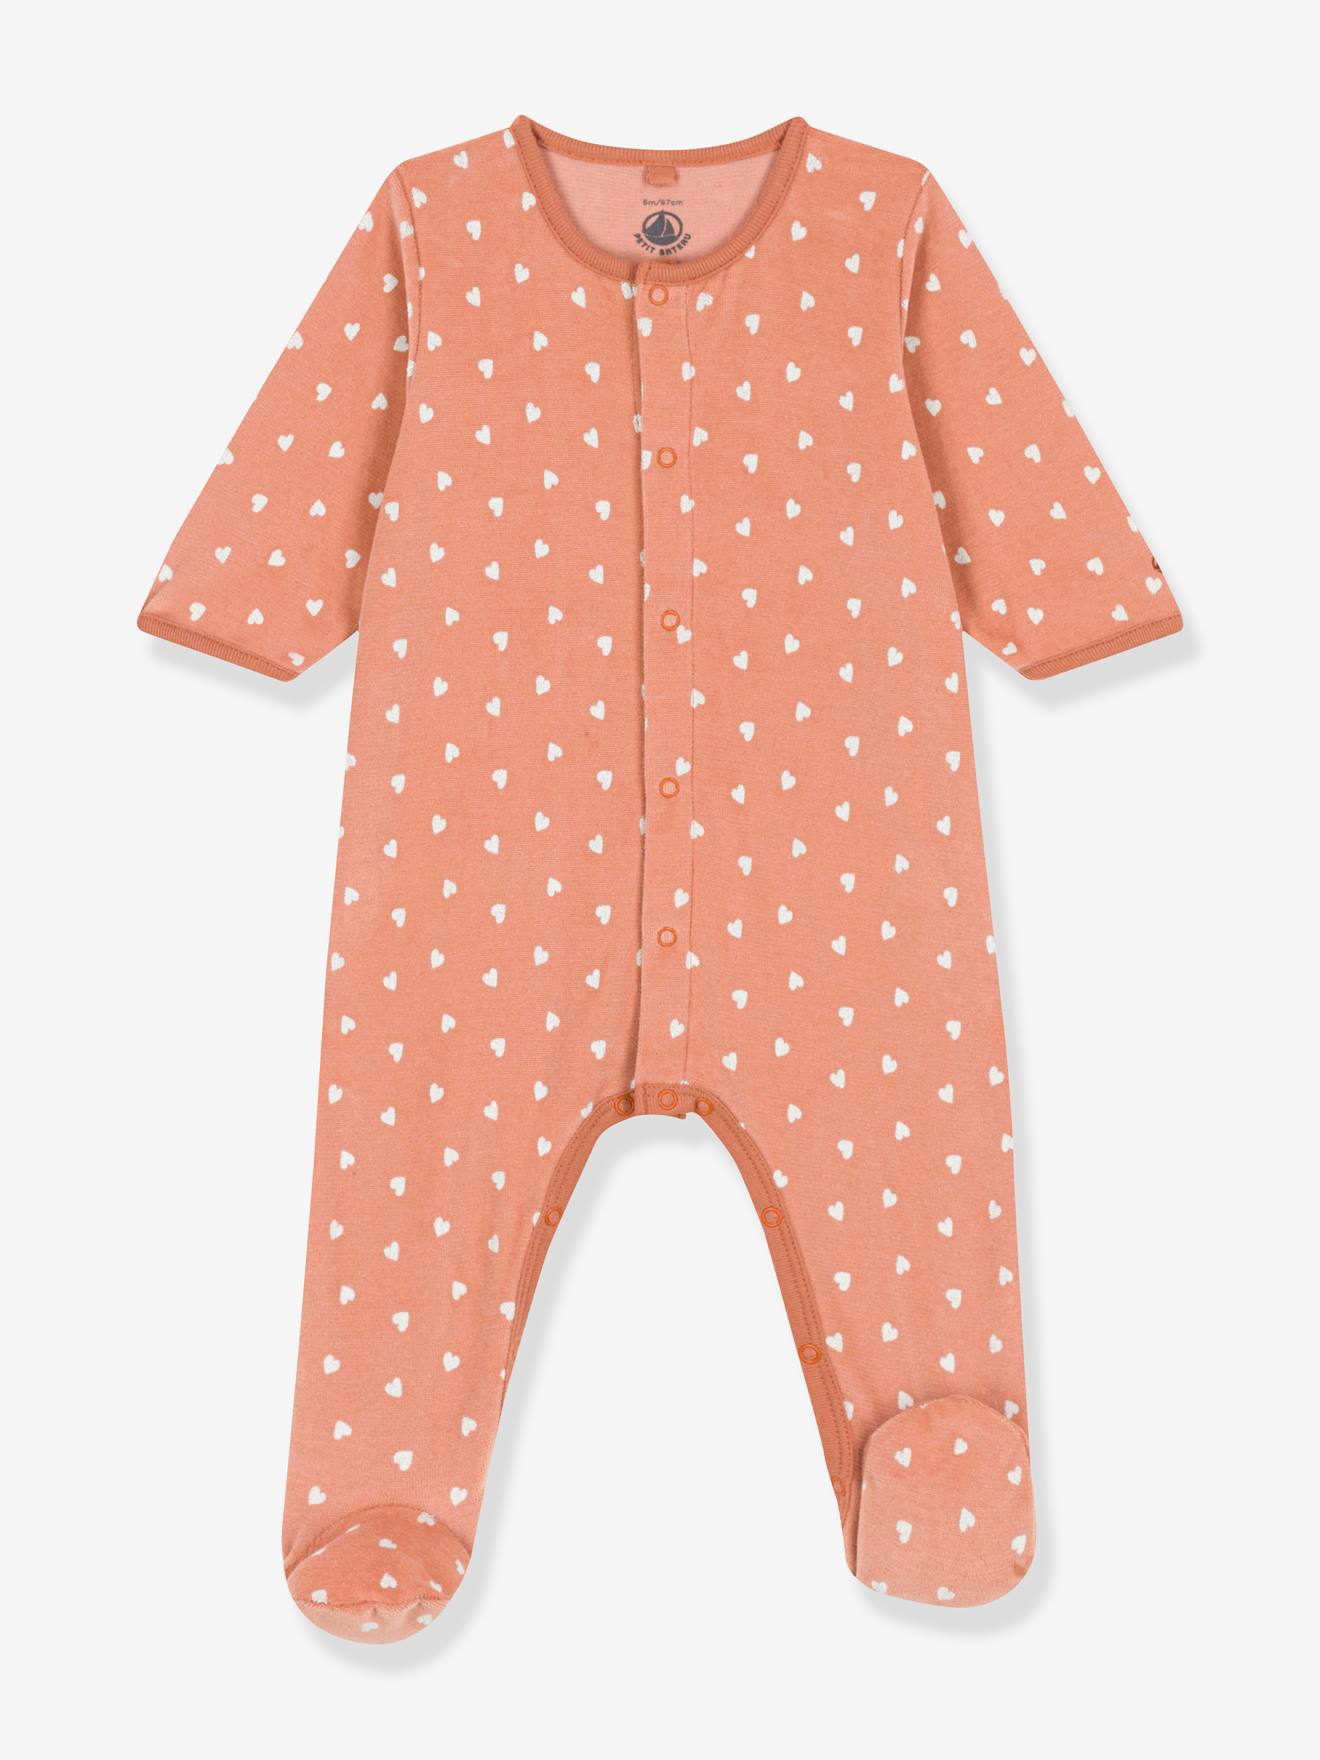 Sleepsuit in Printed Velour for Babies, PETIT BATEAU - printed brown, Baby